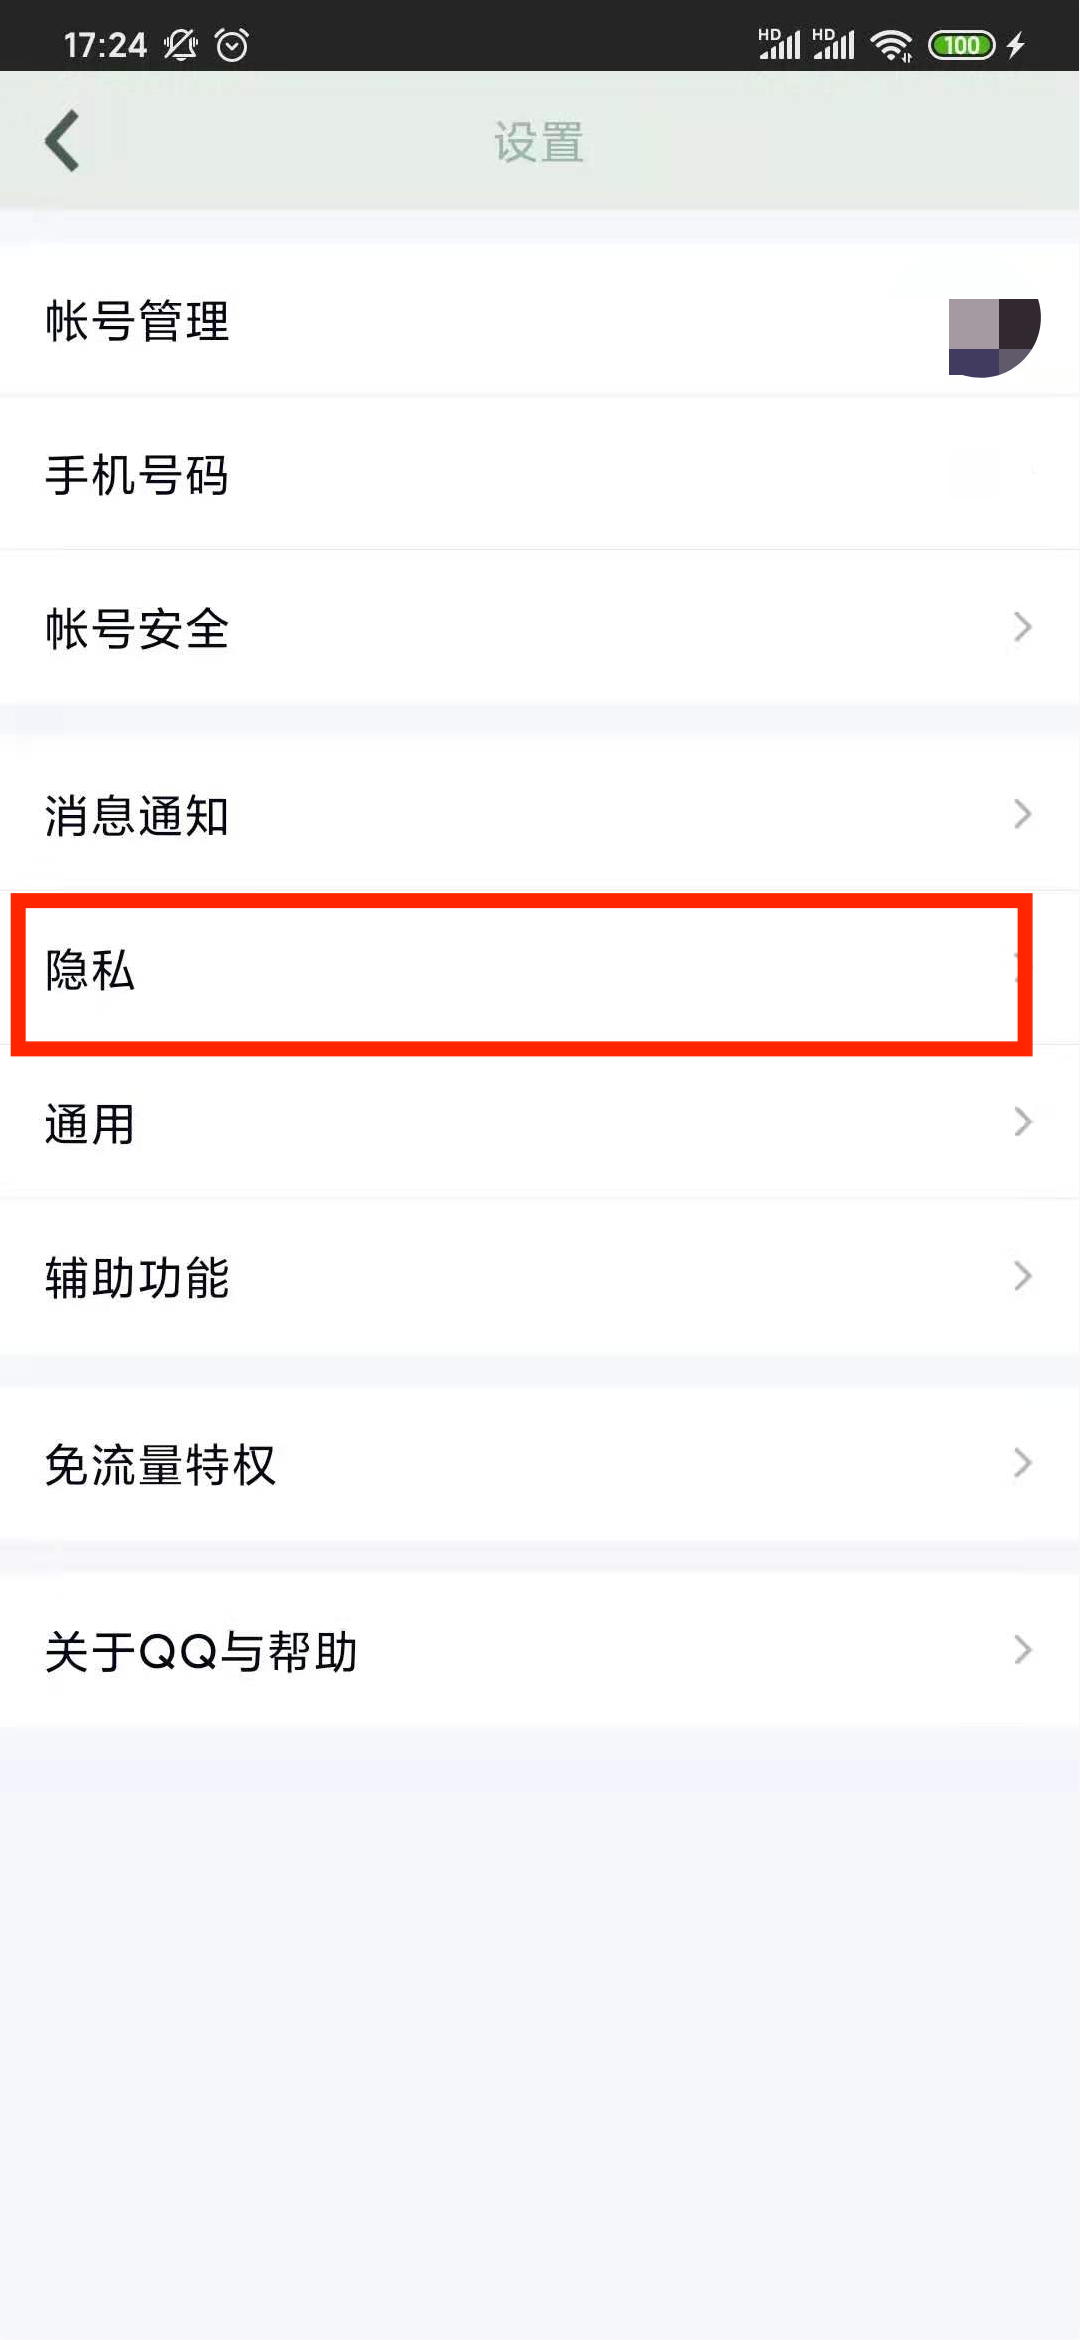 QQ 2021年社交报告出炉 谁是你的热聊好友？ - Tencent 腾讯 QQ / TIM - cnBeta.COM